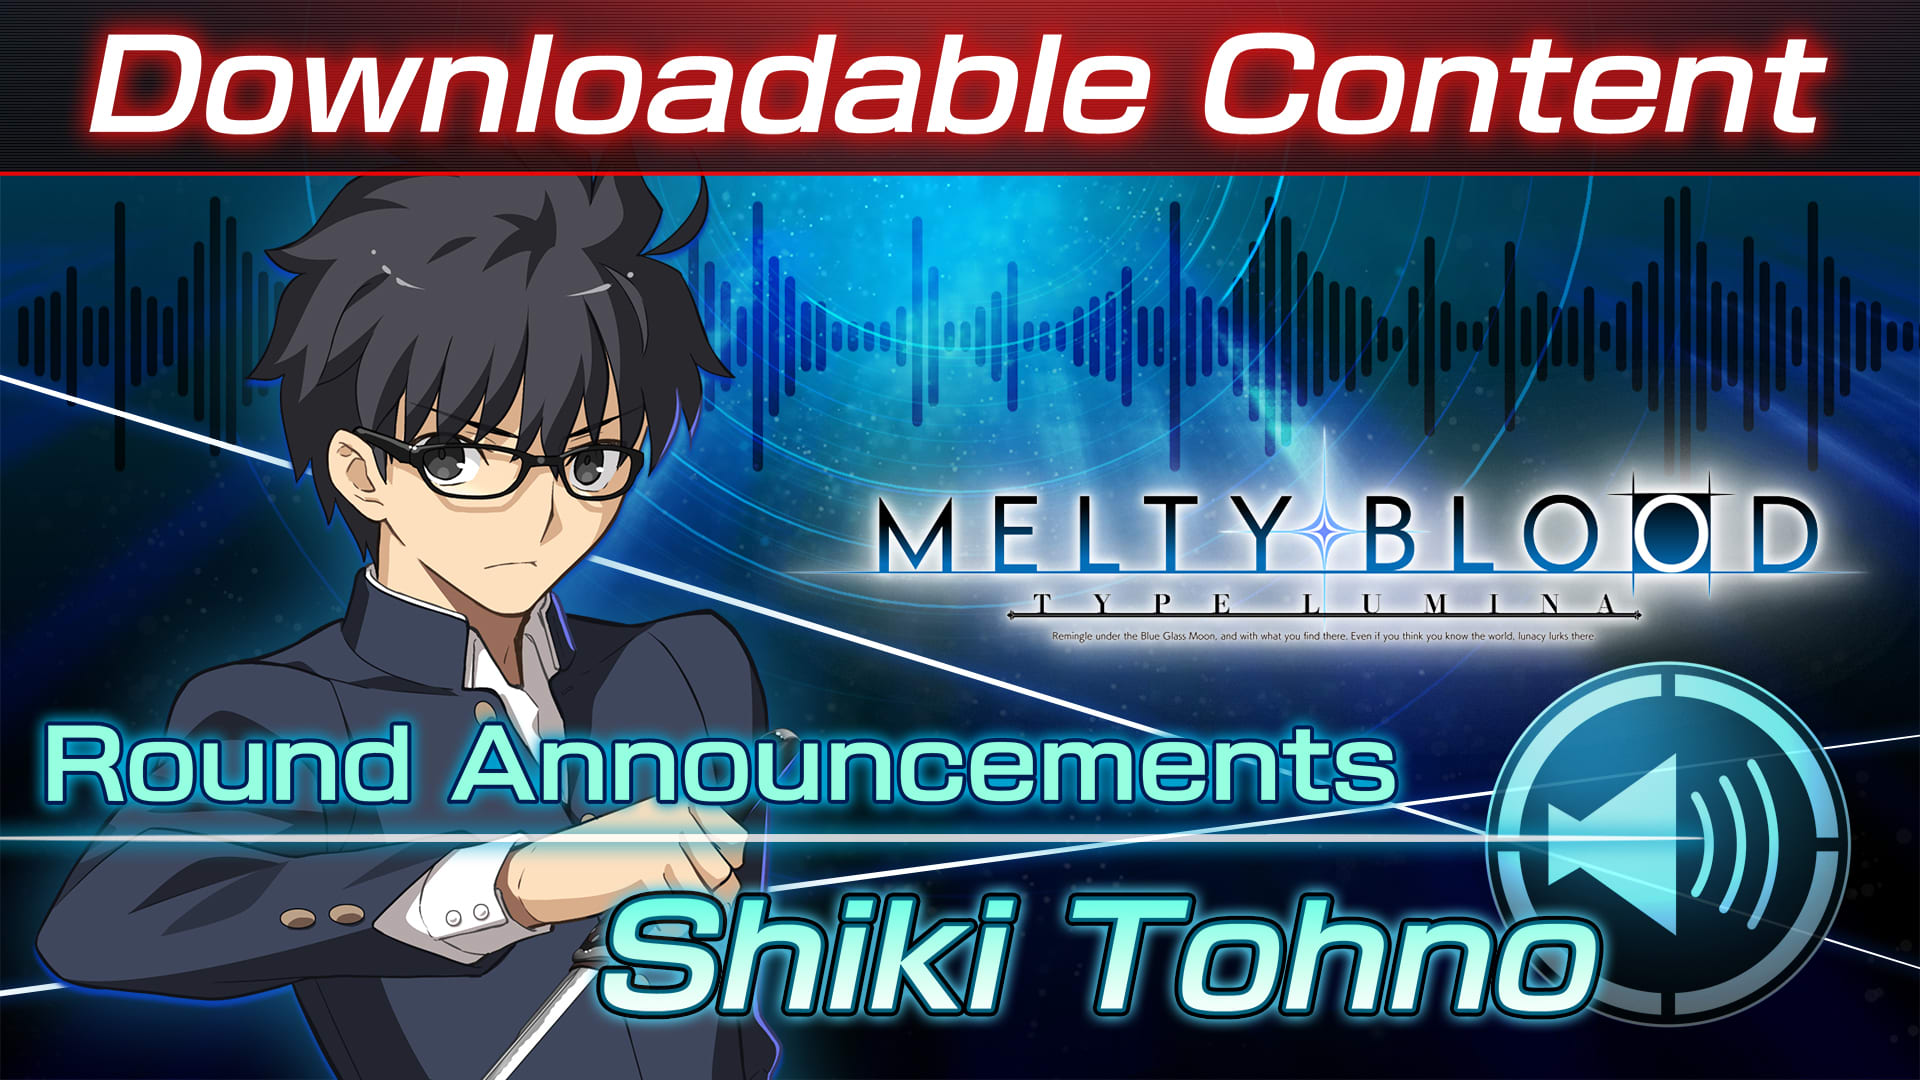 Conteúdo adicional "Voz de anúncio do round: Shiki Tohno"